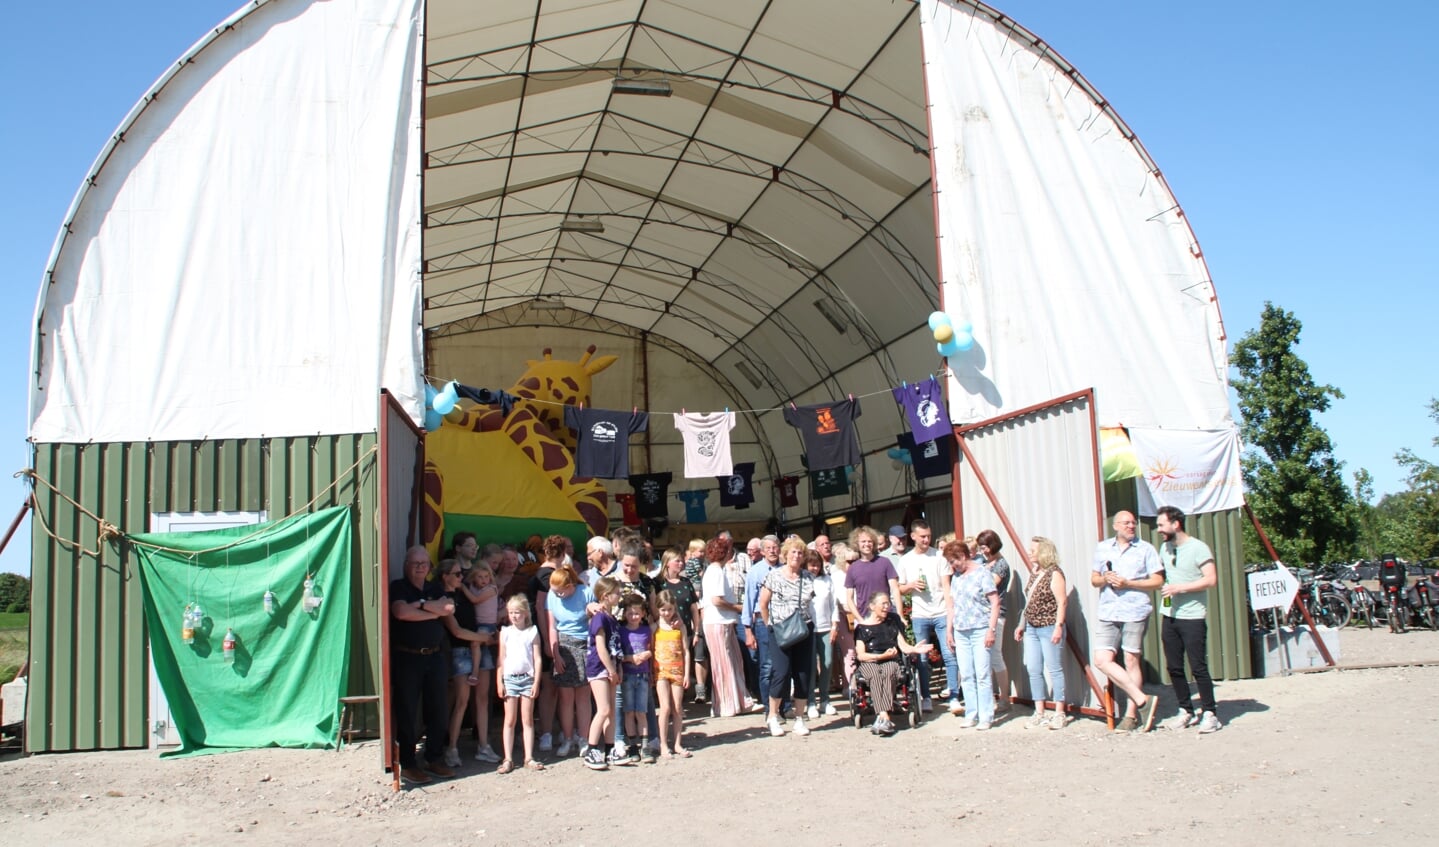 Corsobouwers van corsogroep Zieuwentseweg vieren feest tijdens opening nieuwe bouwlocatie en het 50 jaar bestaan van de corsogroep.